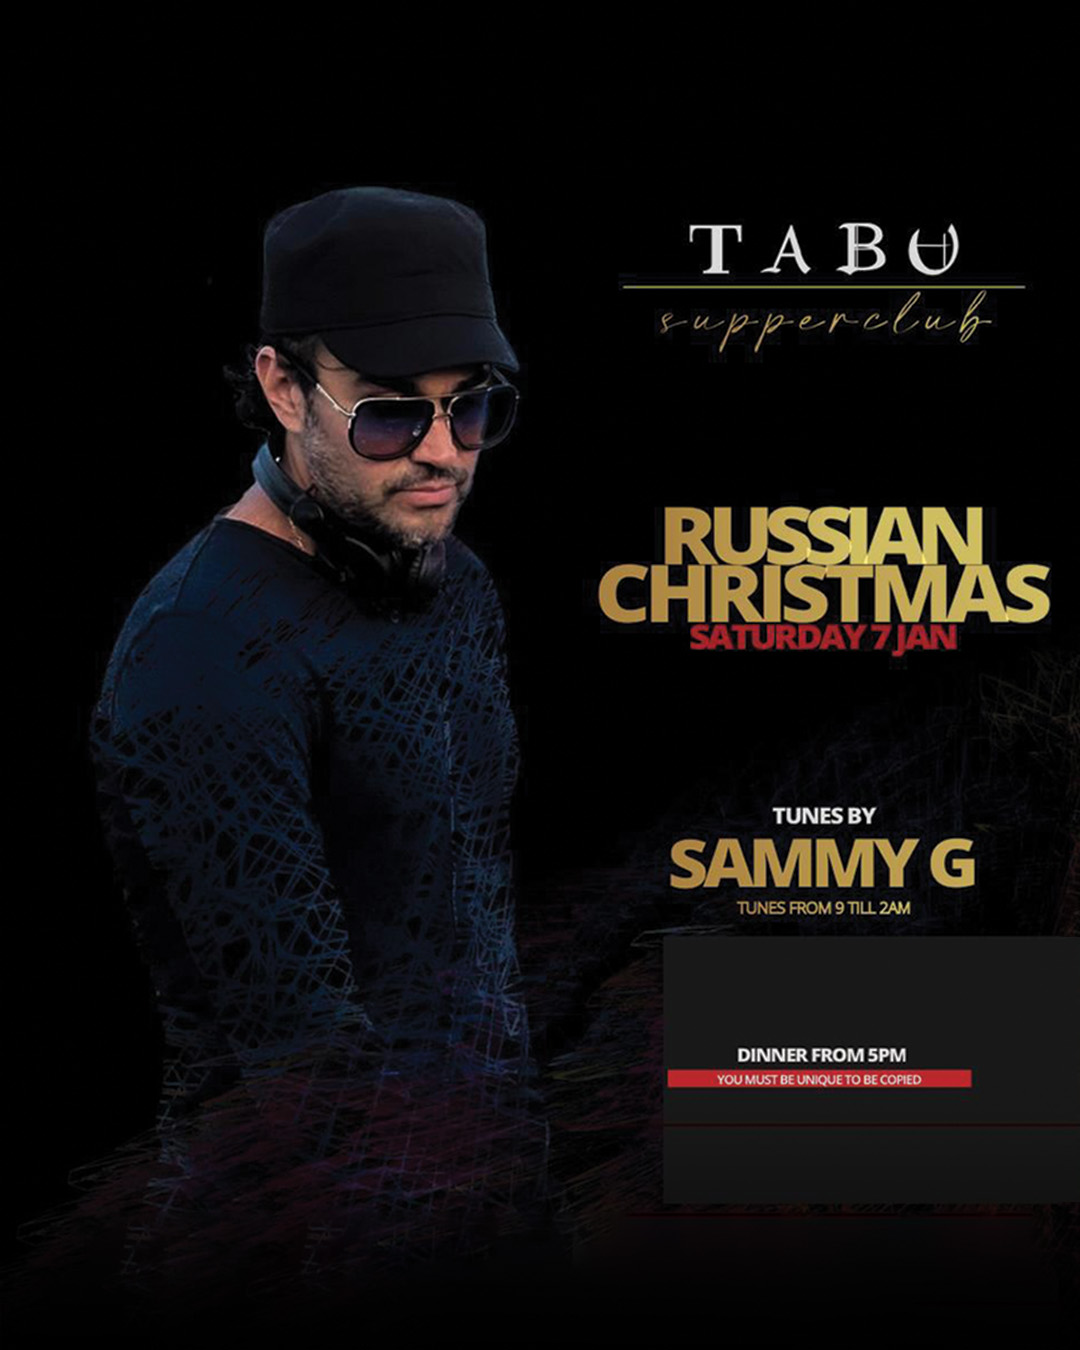 RUSSIAN CHRISTMAS AT TABU – SATURDAY DECEMBER 7TH thumbnail image